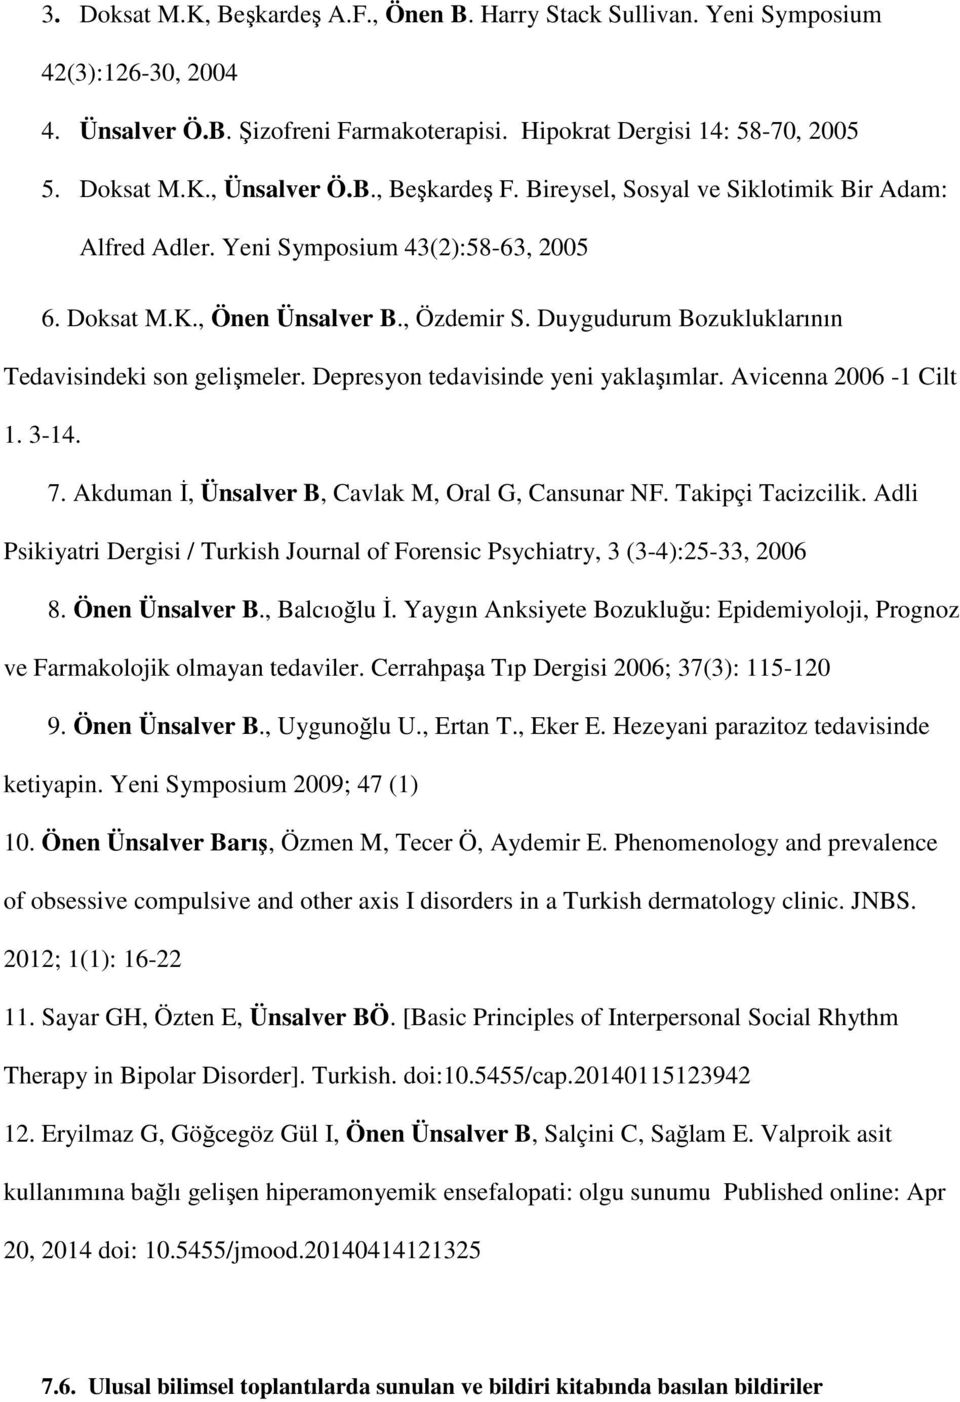 Duygudurum Bozukluklarının Tedavisindeki son gelişmeler. Depresyon tedavisinde yeni yaklaşımlar. Avicenna 2006-1 Cilt 1. 3-14. 7. Akduman İ, Ünsalver B, Cavlak M, Oral G, Cansunar NF.